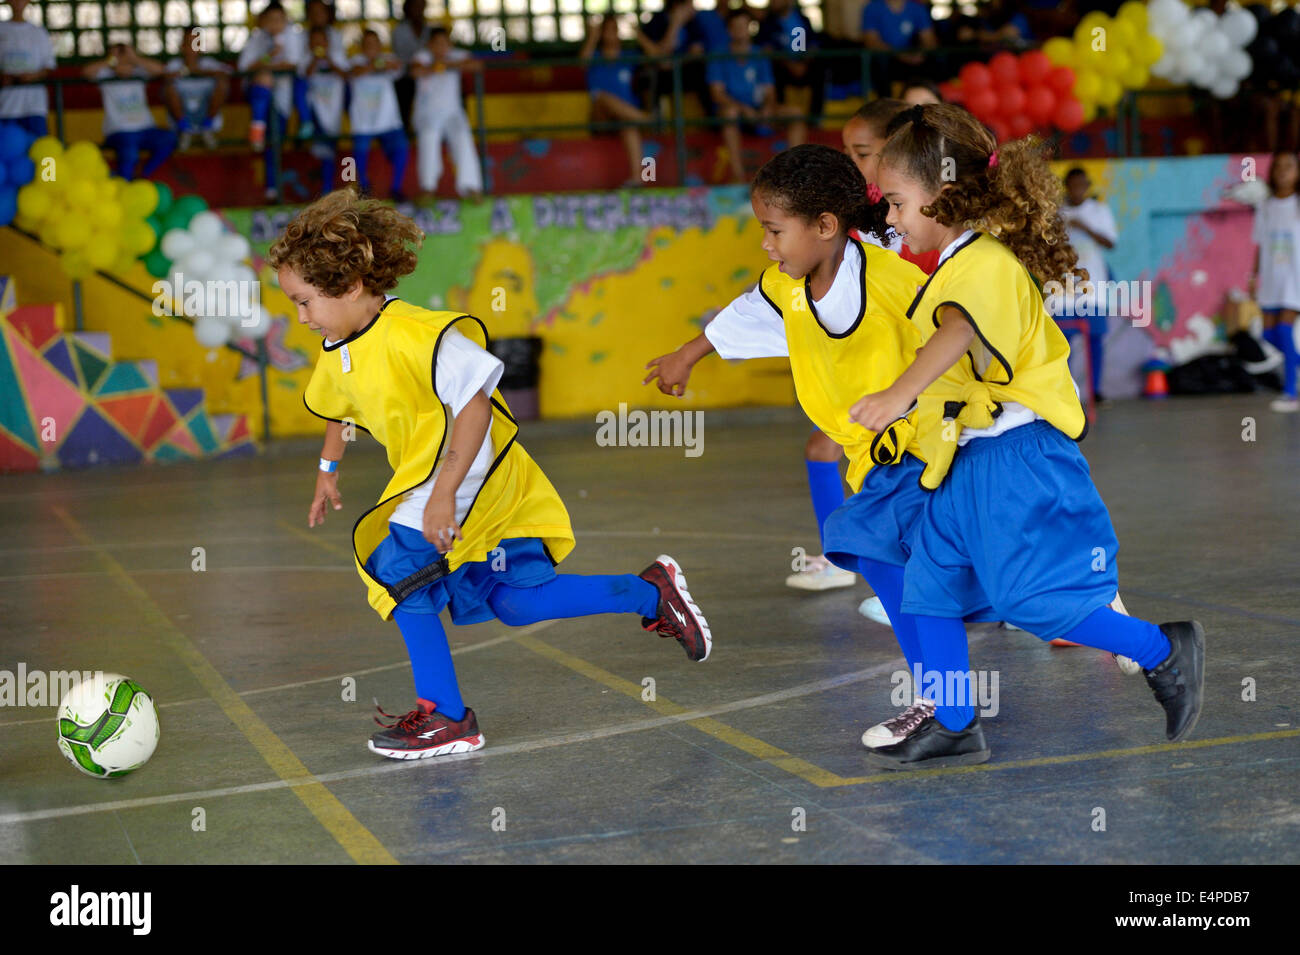 Tournoi de football avec des enfants sur le terrain de sport d'un bidonville, Morro dos Prazeres, favela de Rio de Janeiro, Brésil Banque D'Images